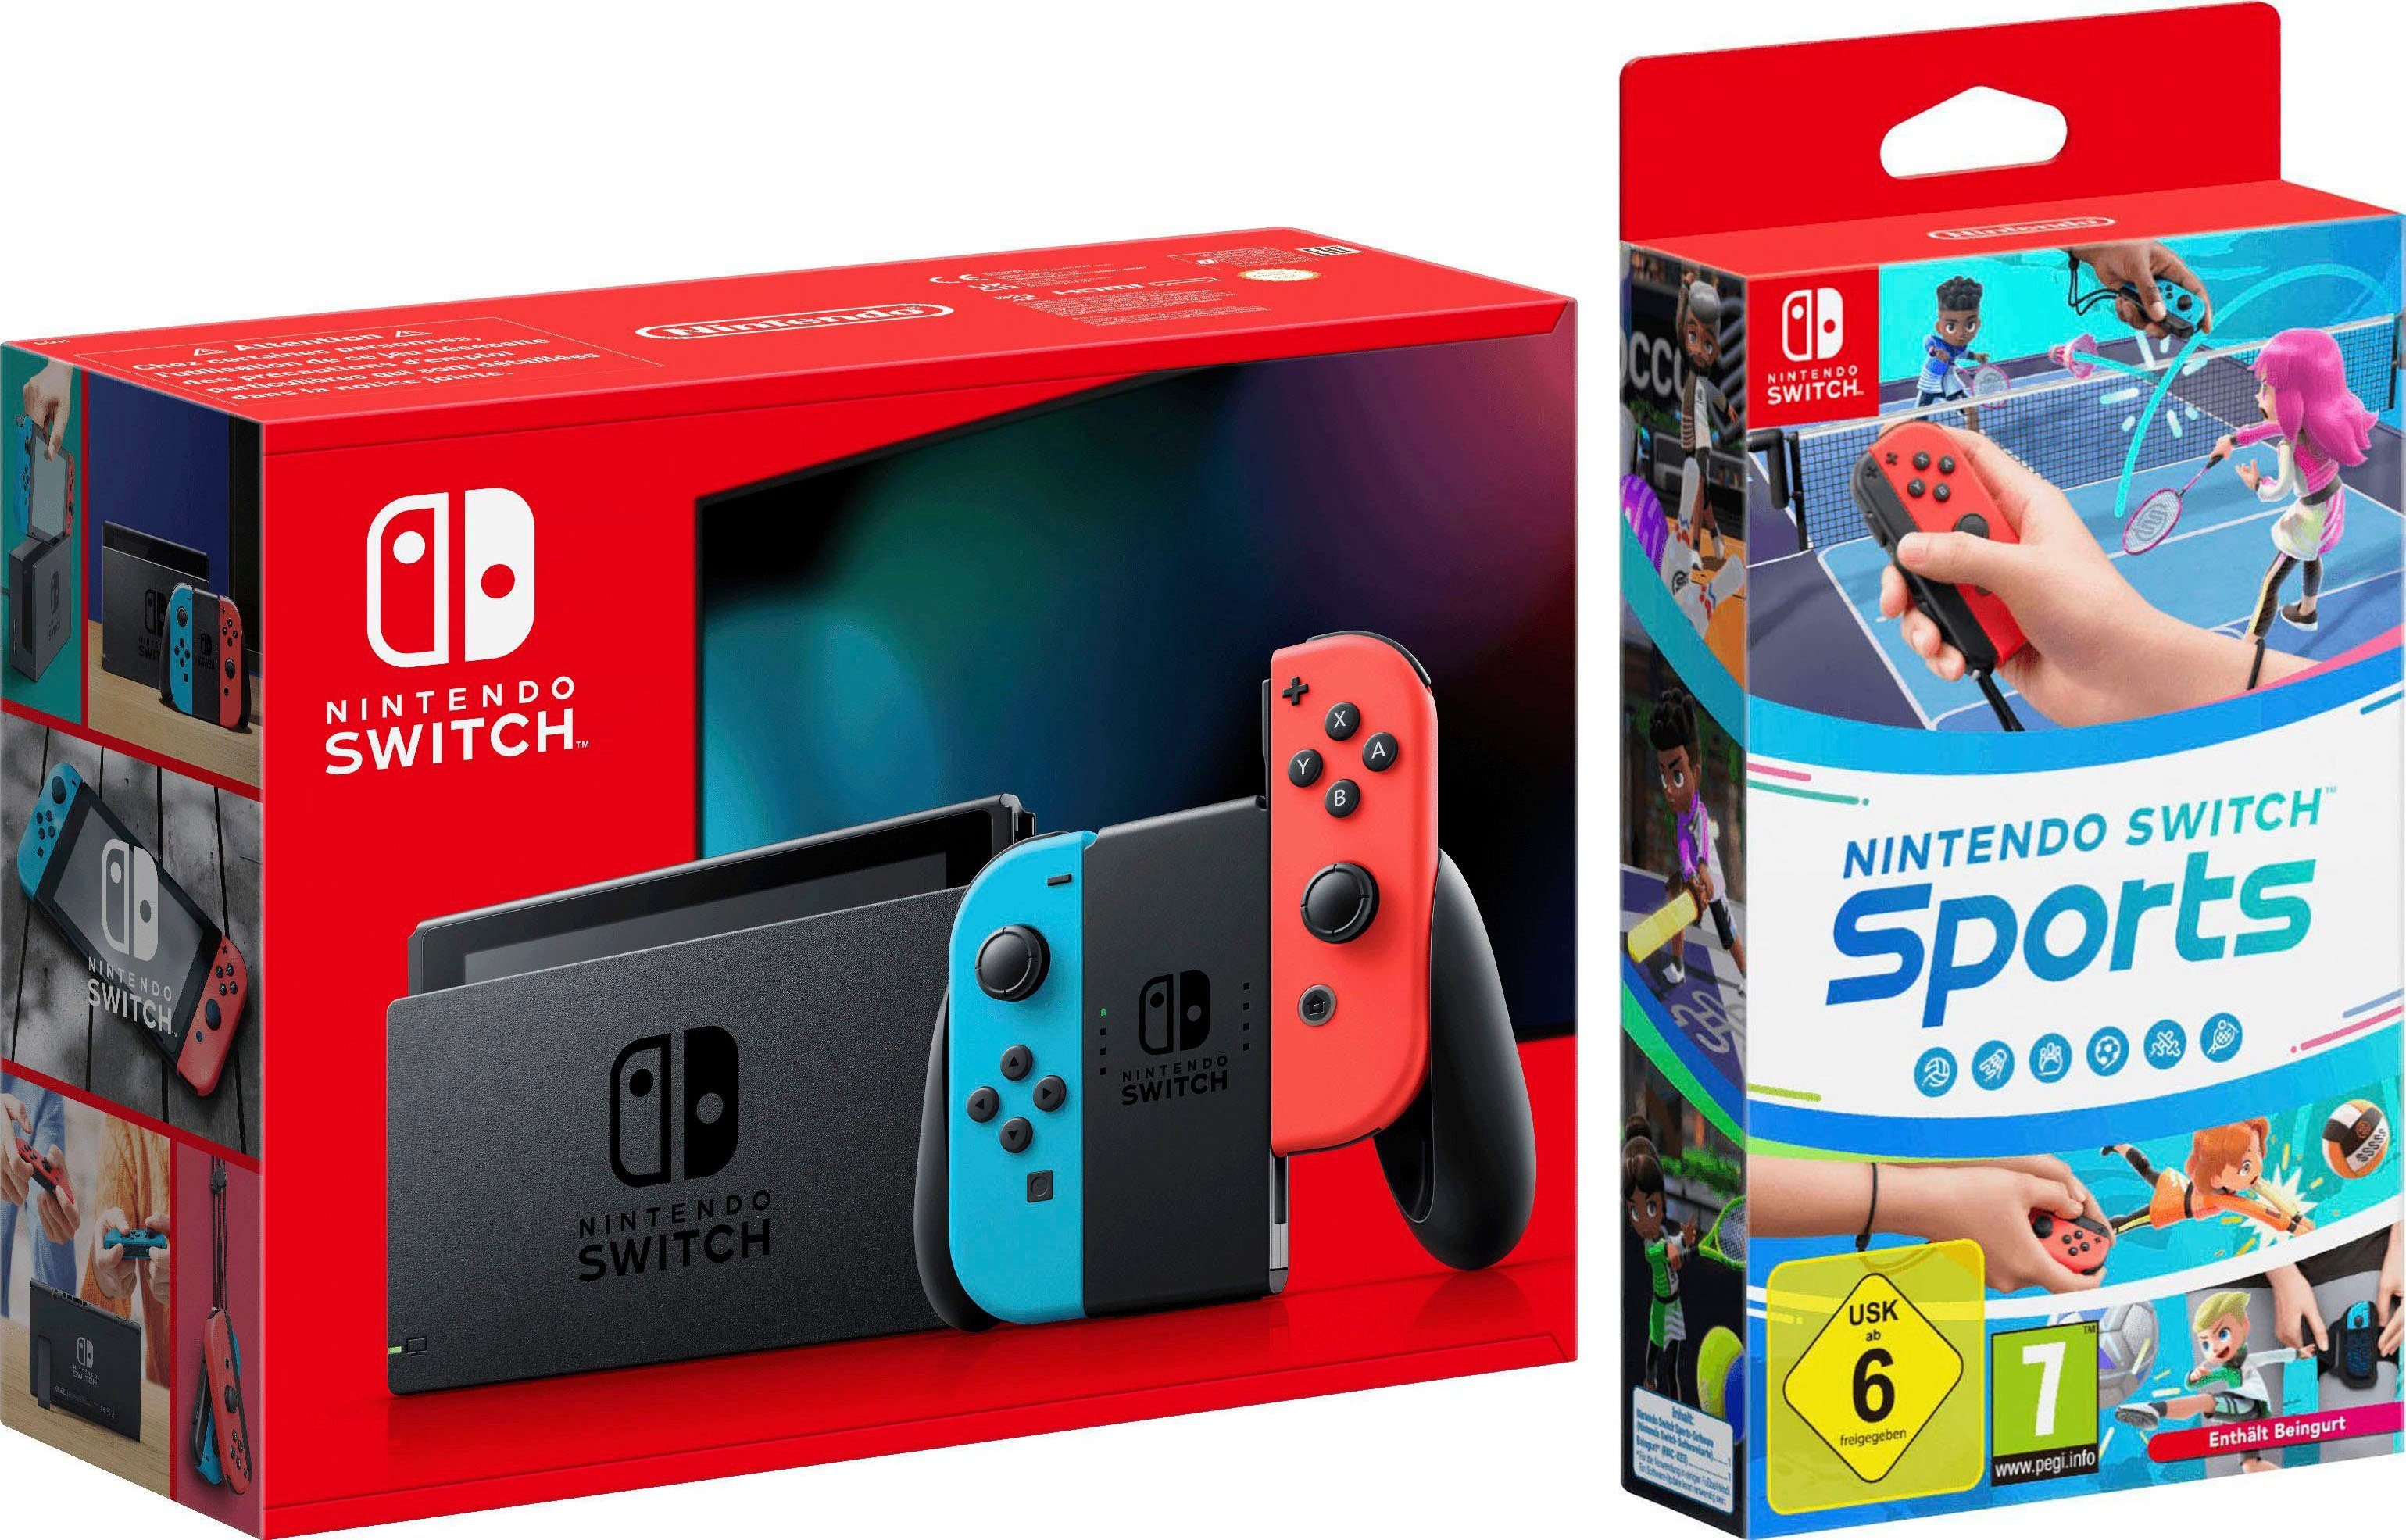 Nintendo Switch, inkl. Switch Sports, Neue Joy-Con Controller für  realistischen, interaktiven Spielspaß | Nintendo-Switch-Controller